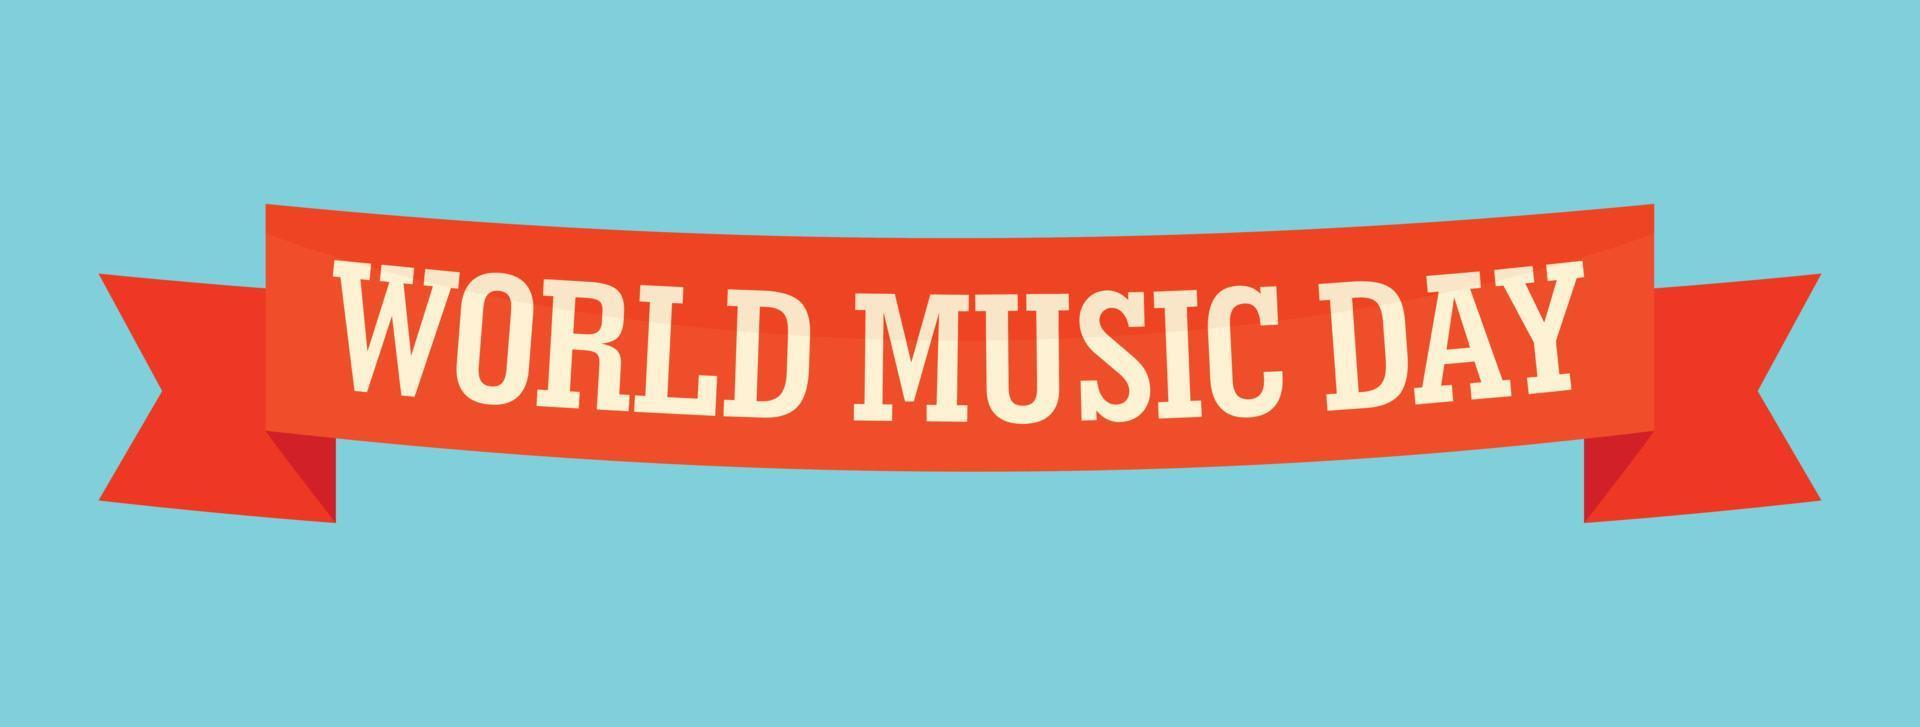 icono de banner del día mundial de la música, estilo plano vector